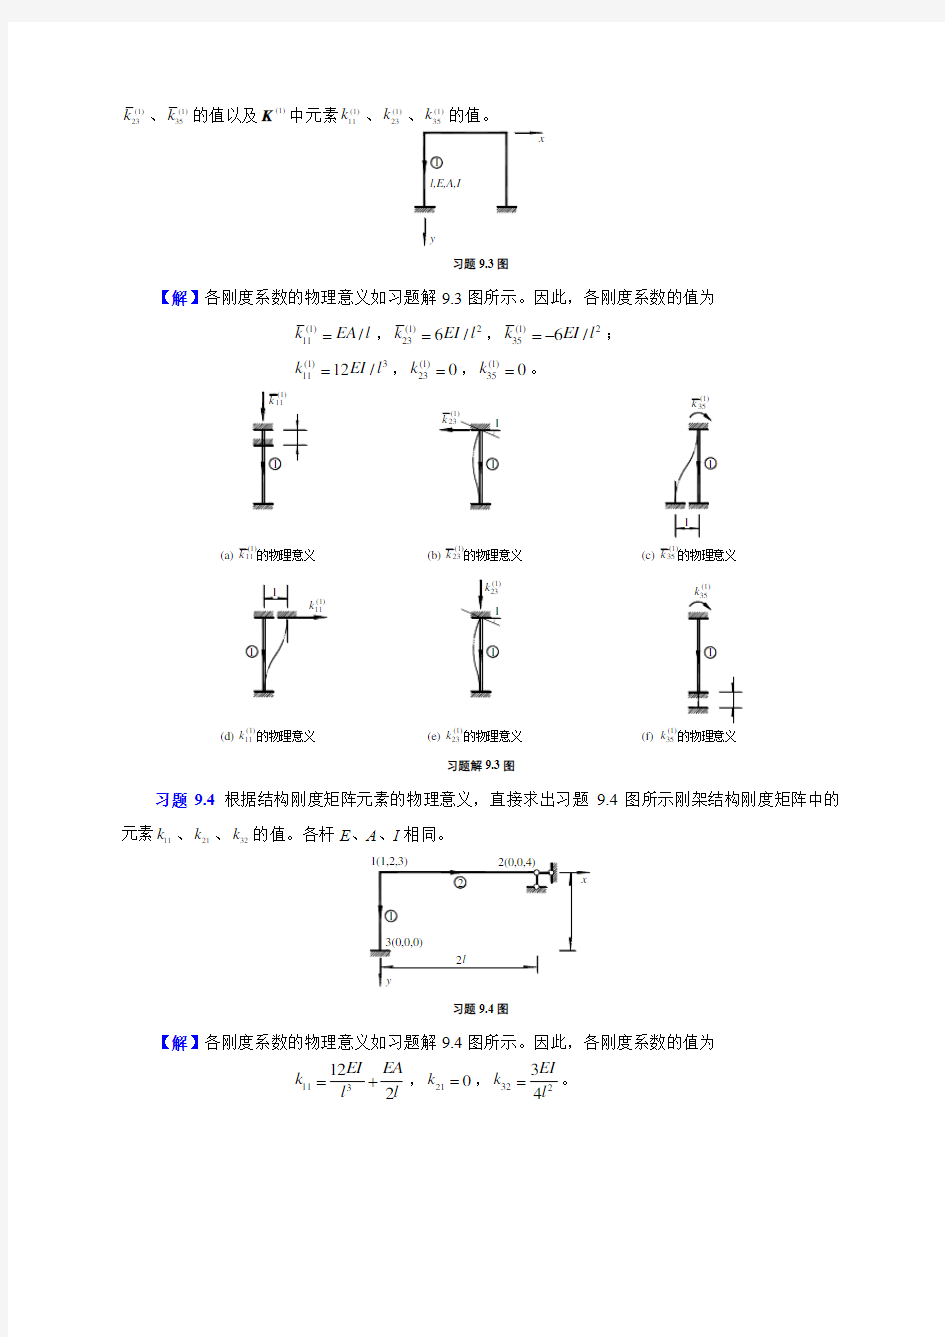 9矩阵位移法习题解答-重庆大学文国治版-教材课后答案